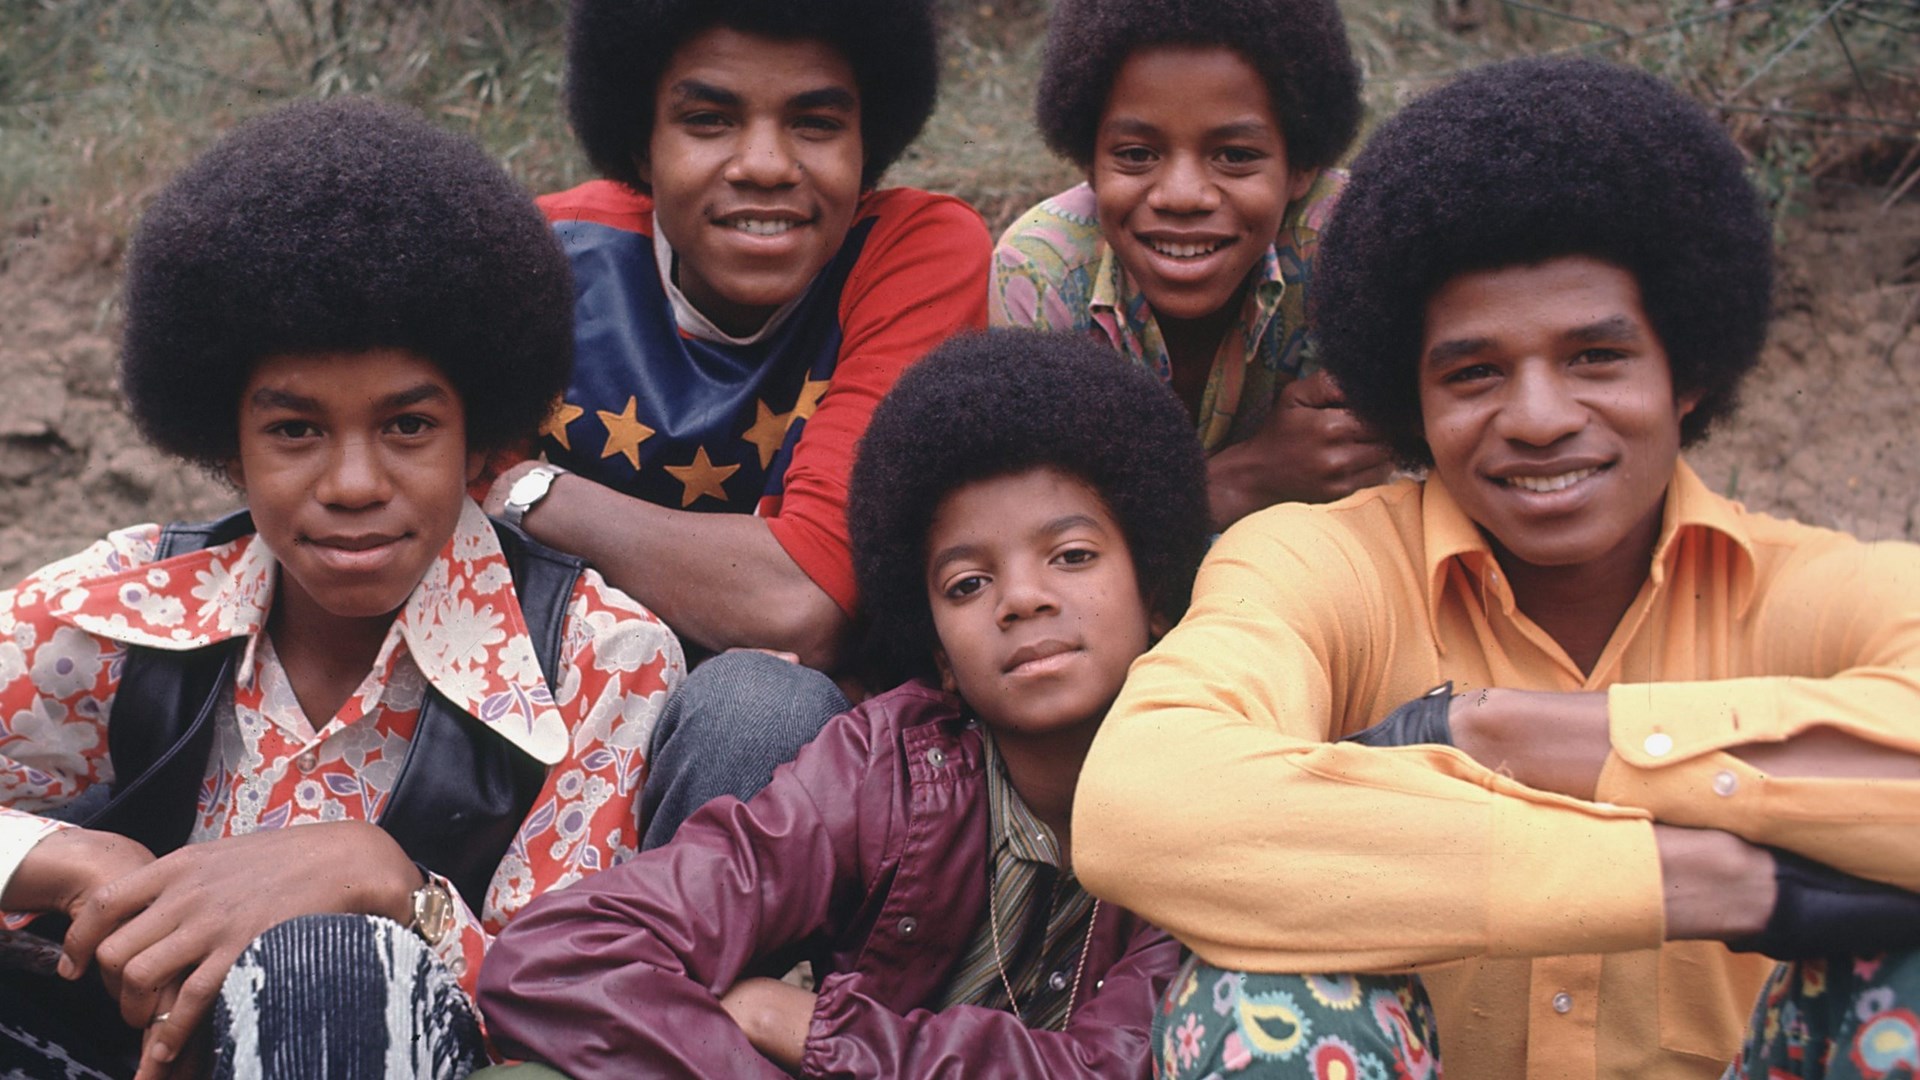 Σαν σήμερα το 1968 οι Jackson Five υπέγραφαν στη δισκογραφική Motown